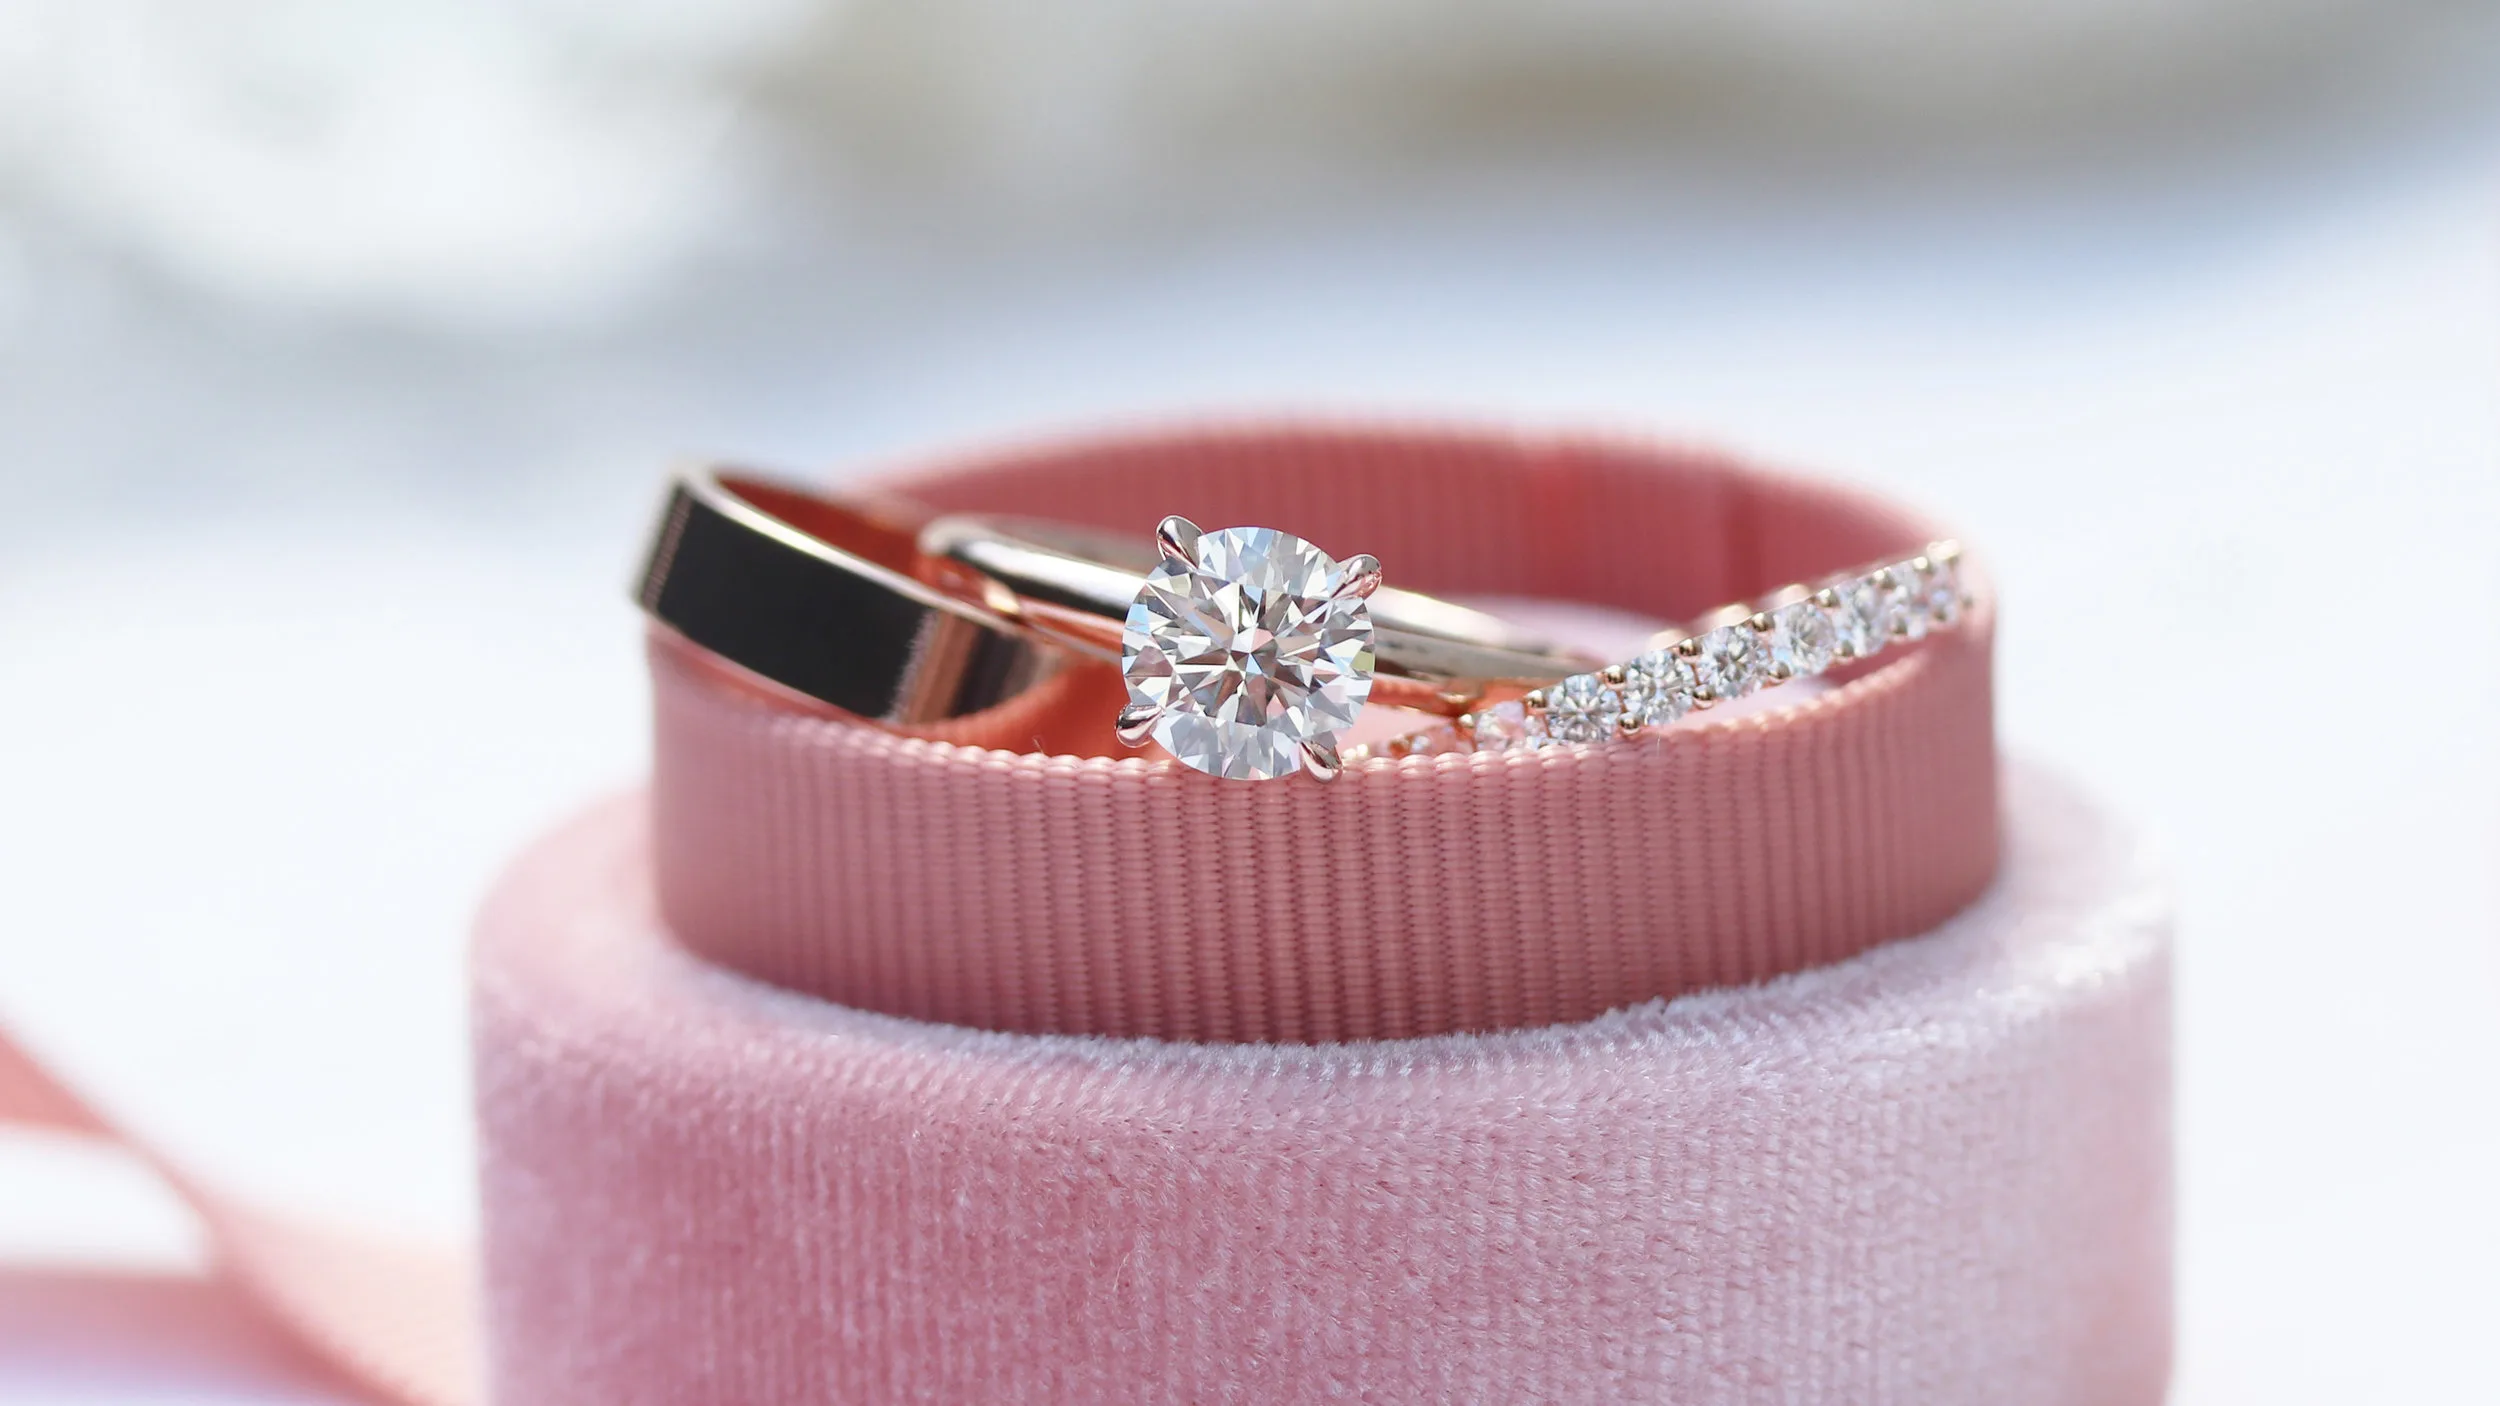 Buy Joyalukkas 18k Rose Gold & Diamond Ring for Men Online At Best Price @  Tata CLiQ